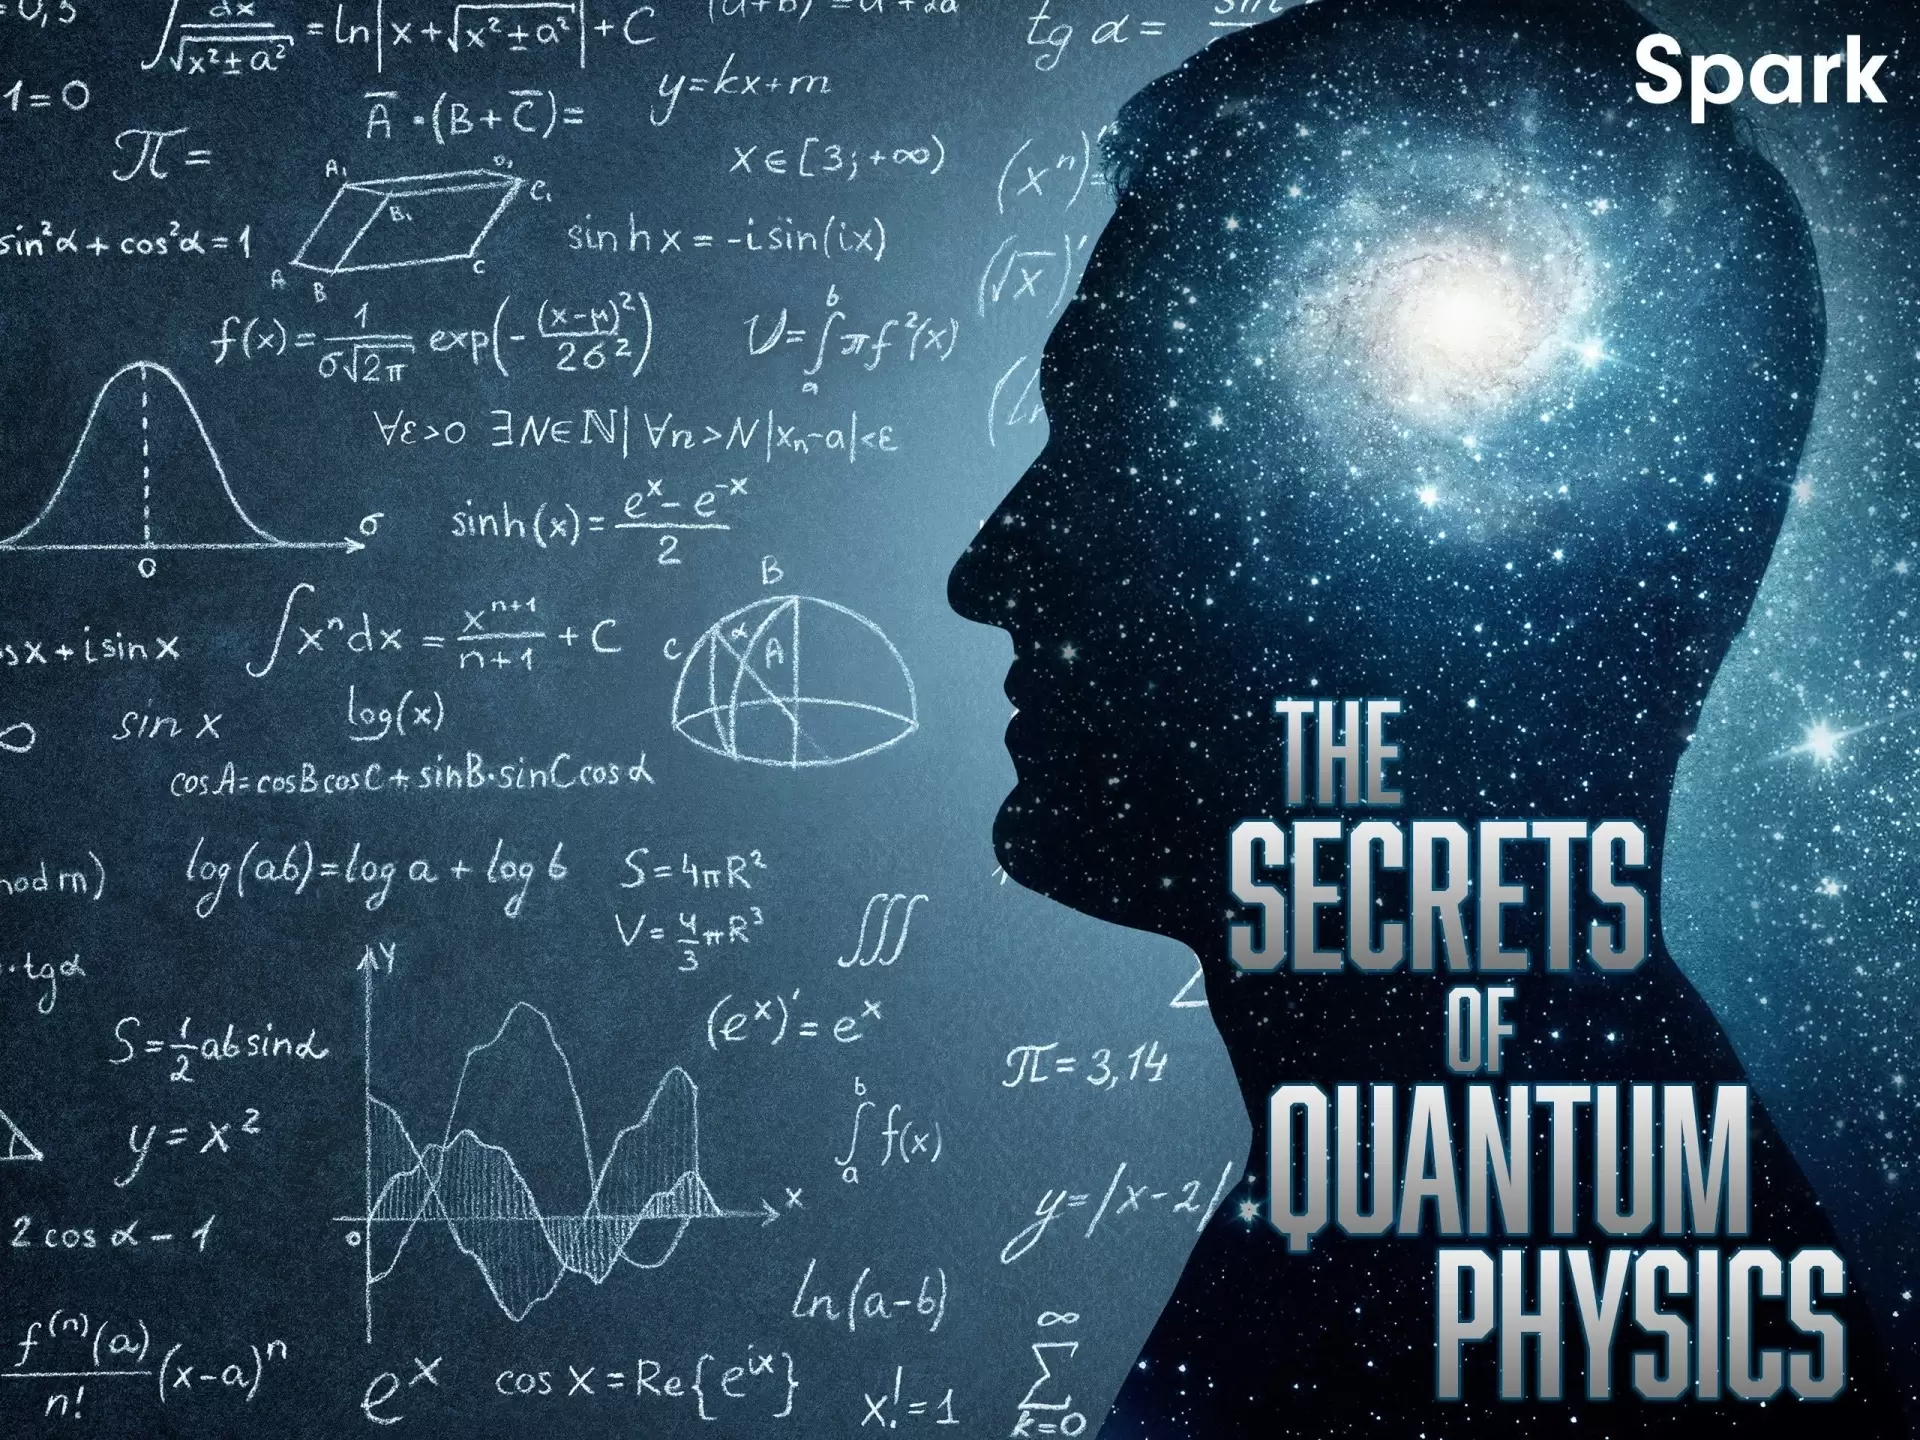 دانلود مستند The Secrets of Quantum Physics 2014 (اسرار فیزیک کوانتوم) با زیرنویس فارسی